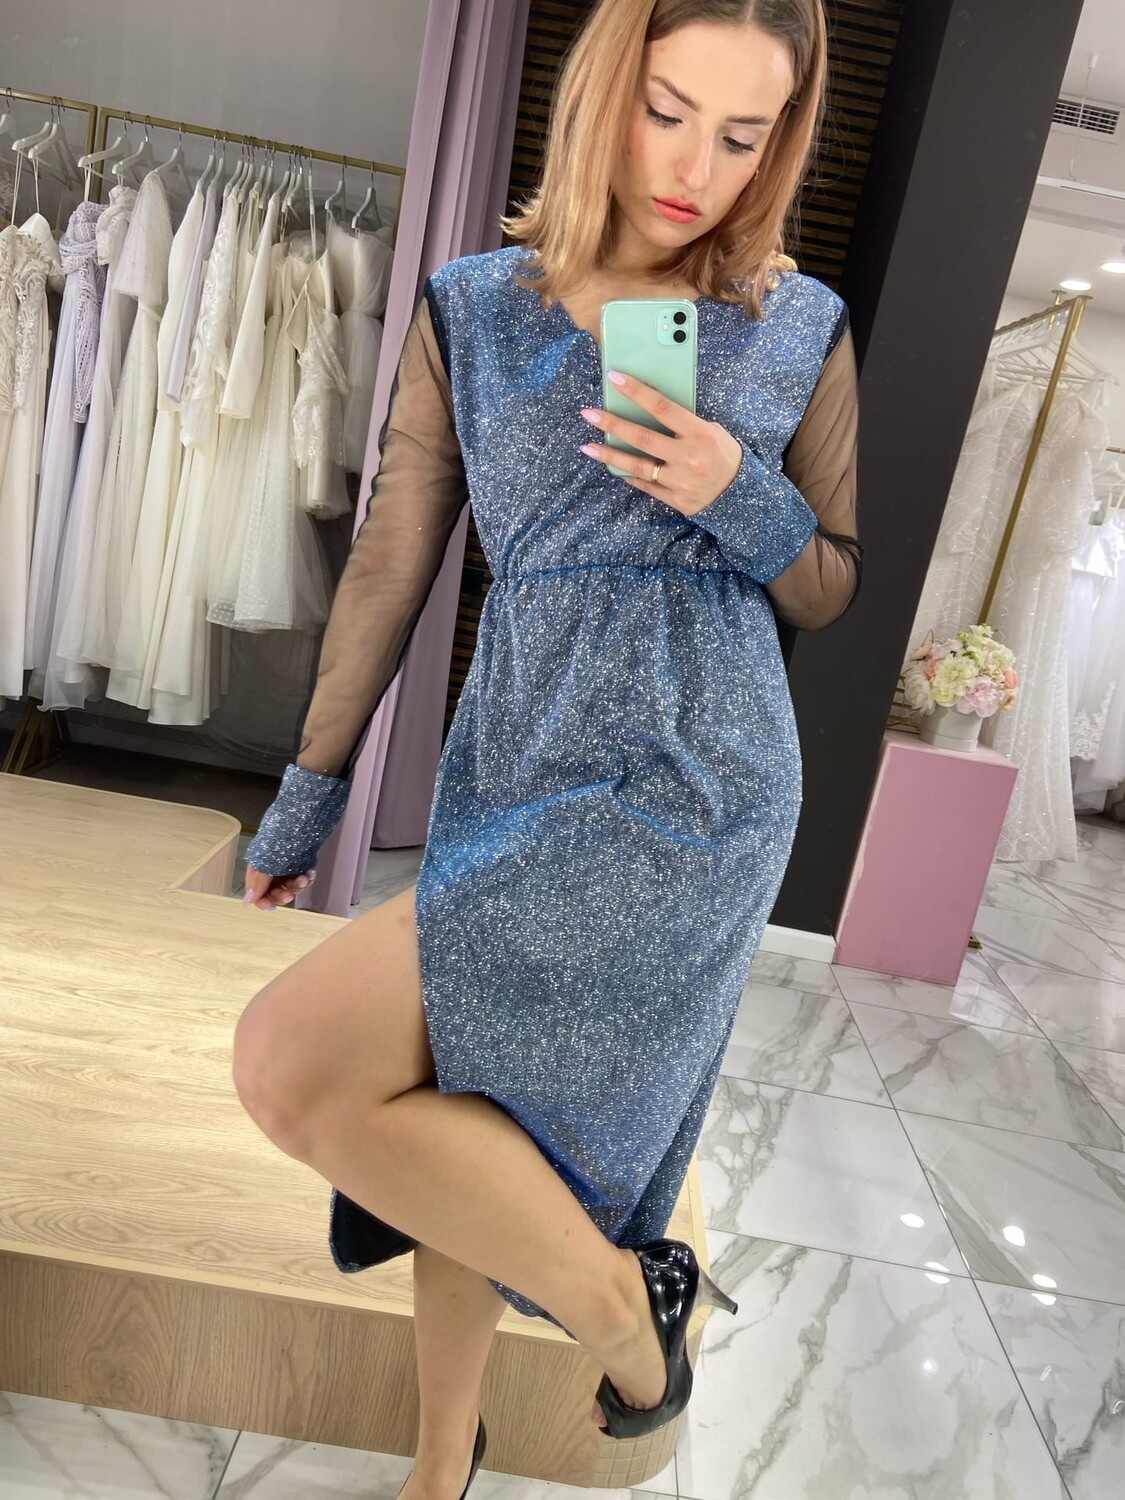 Вечернее платье голубое с прозрачными рукавами (50 размер)